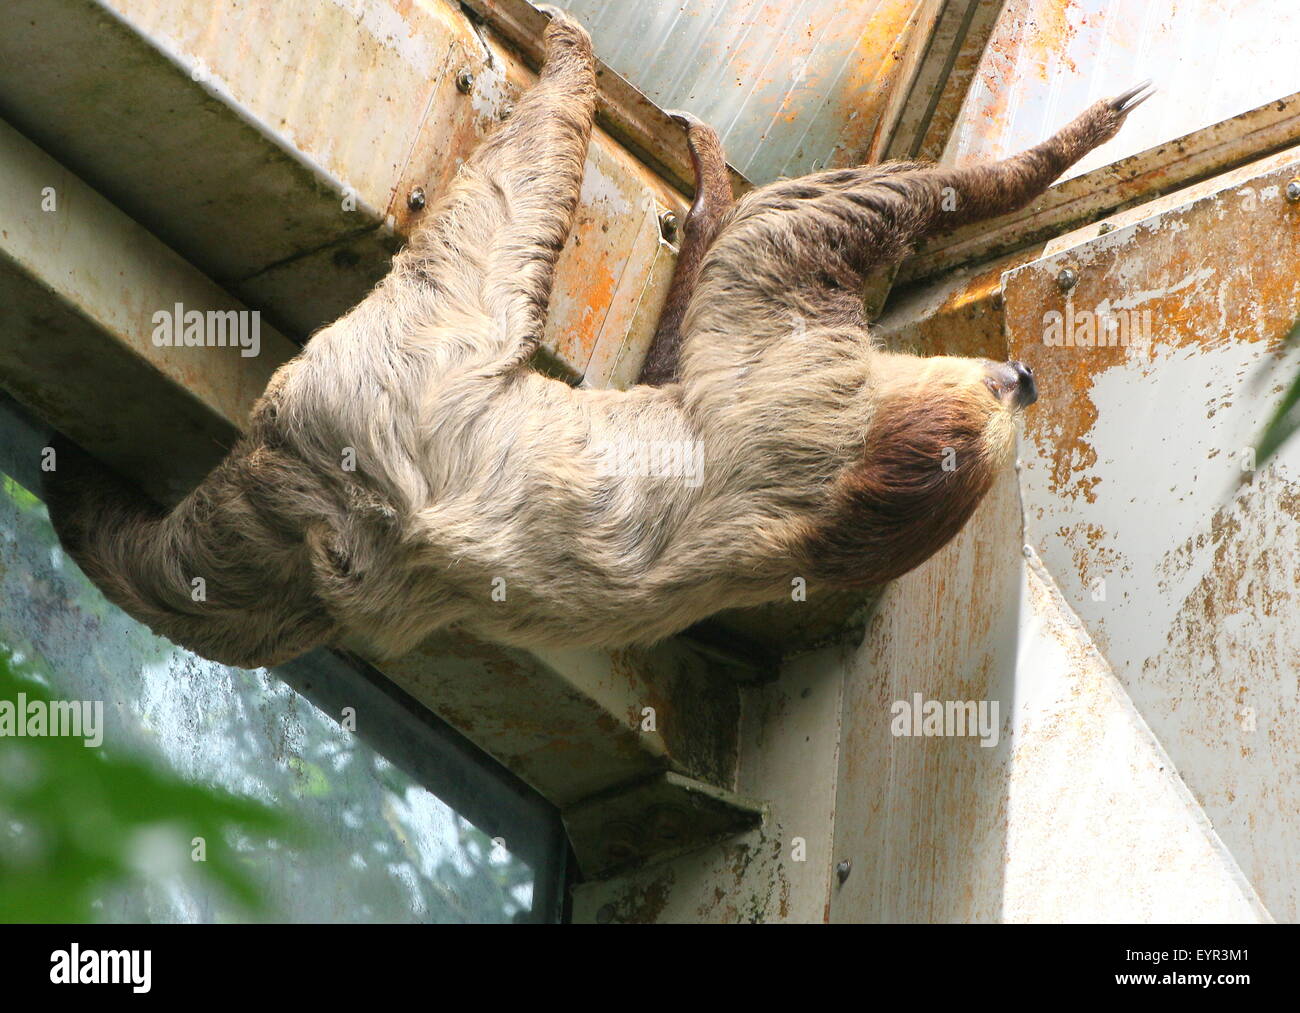 South American Linnaeus dos vetado pereza o del Sur dos dedos cada sloth (Choloepus didactylus) en el zoo Noorder Dierenpark Zoo, Países Bajos Foto de stock